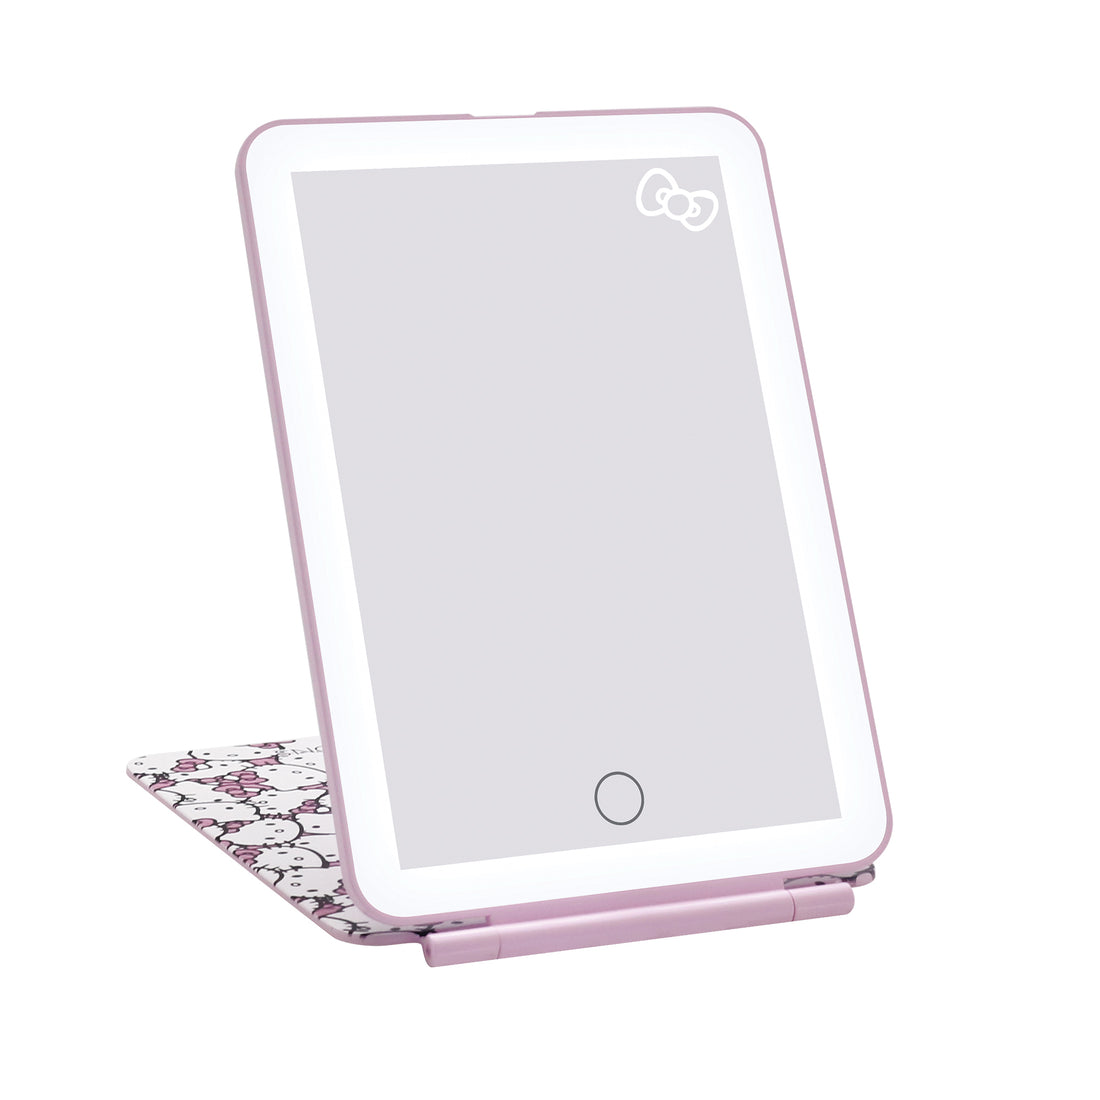 Hello Kitty (White/Pink) Touch Pad Mini Tri-Tone LED Makeup Mirror